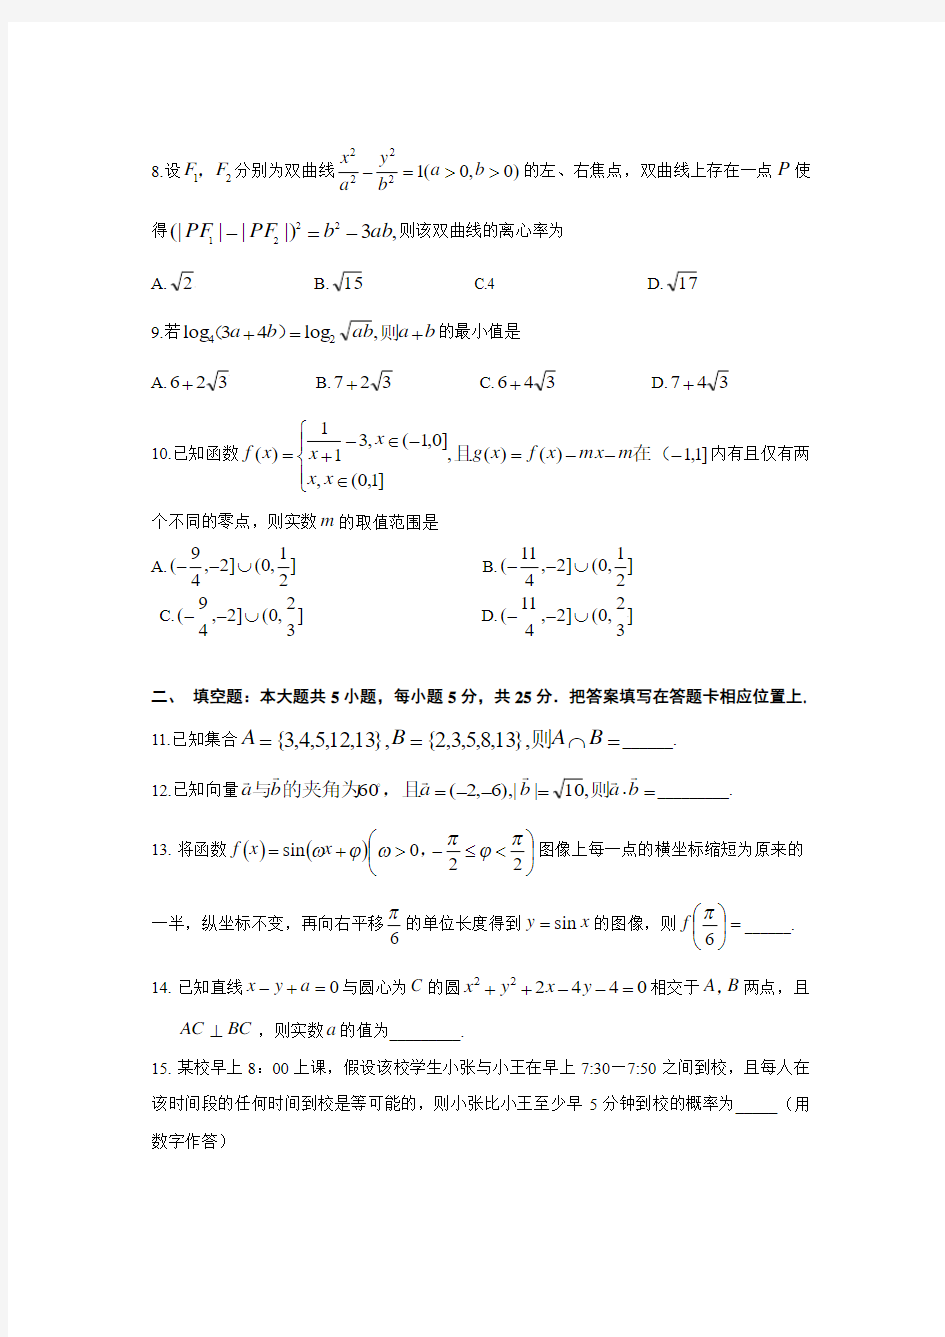 2014年高考文科数学试题(重庆卷)及参考答案